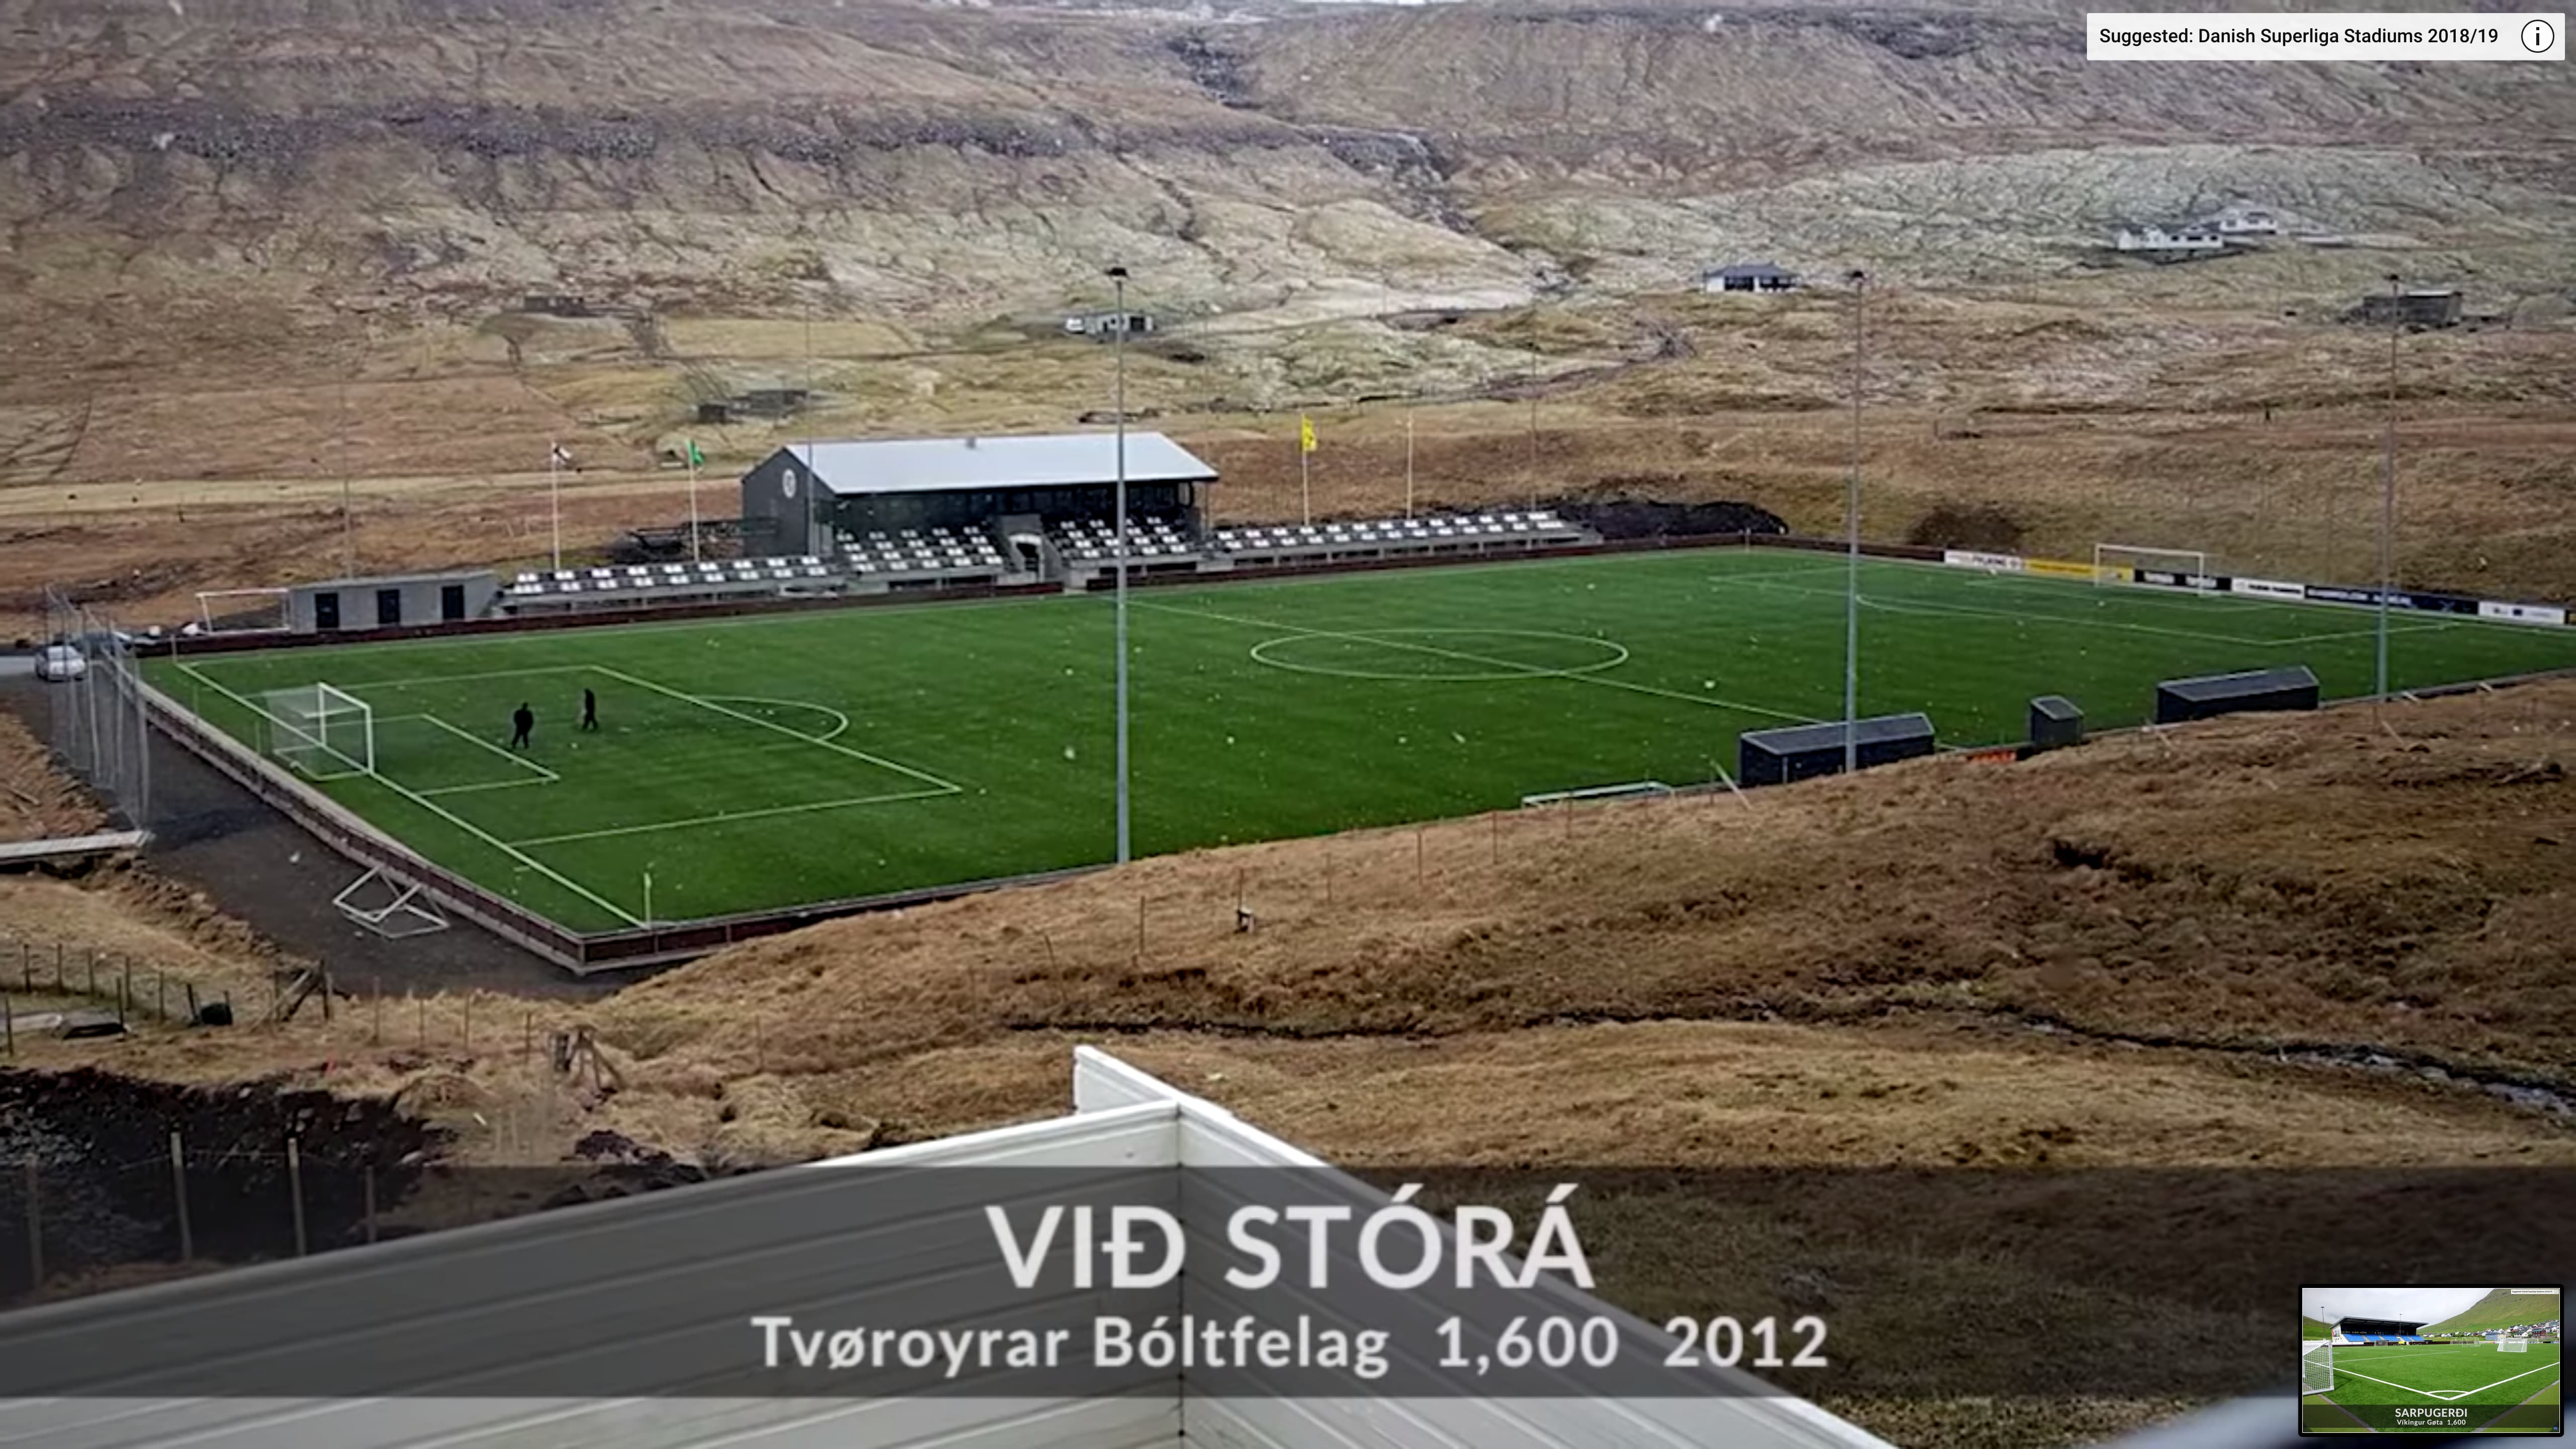 Tvøroyrar Bóltfelag (TB) stadium from the Faroe Islands Premier League